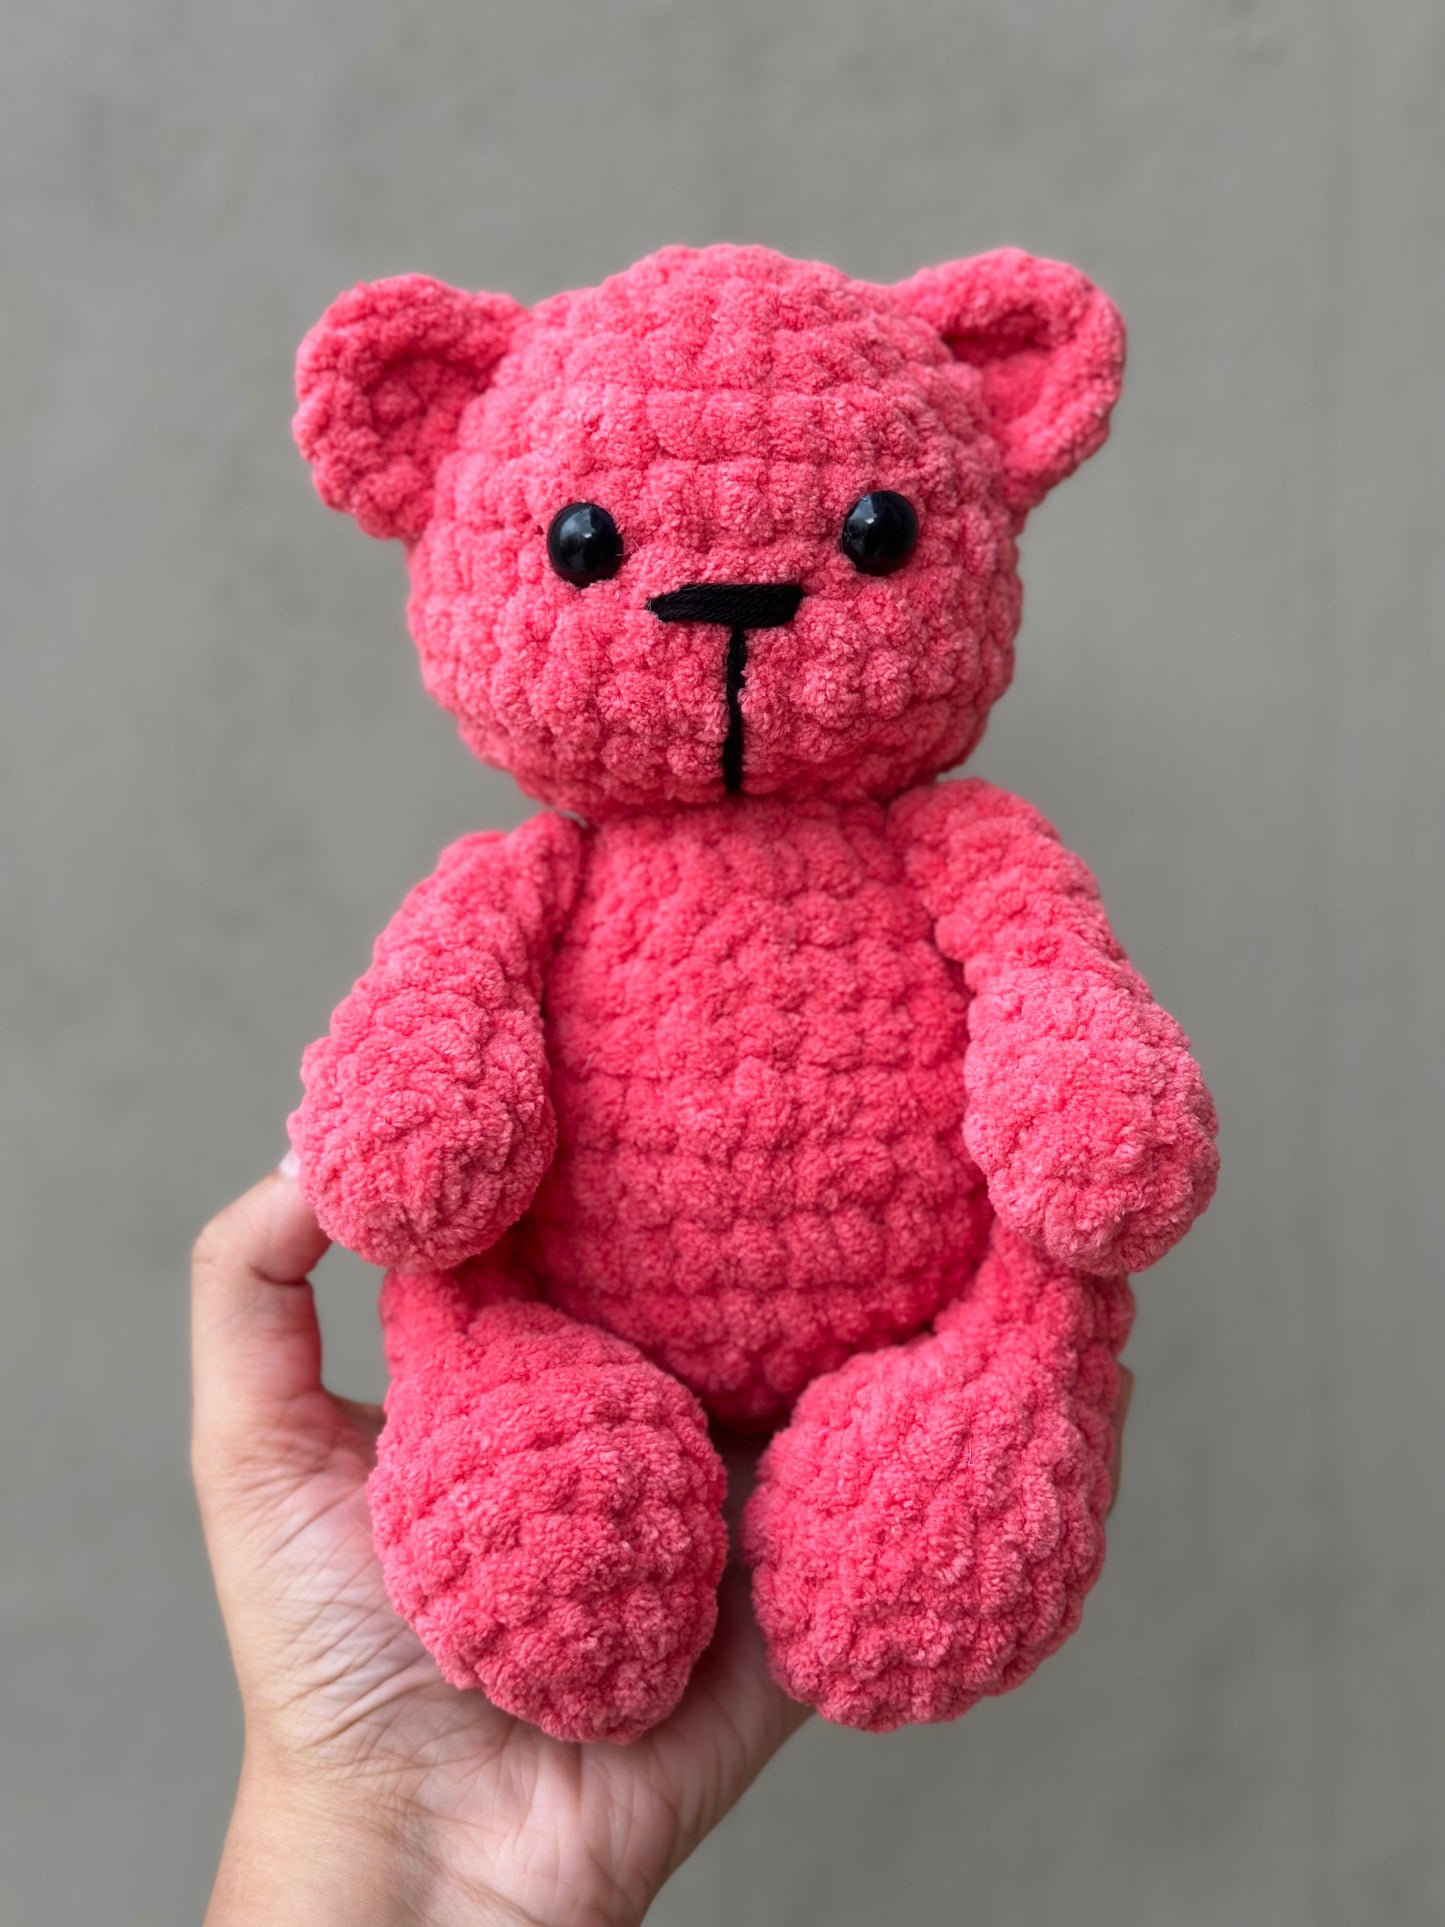 Toy - teddy bear